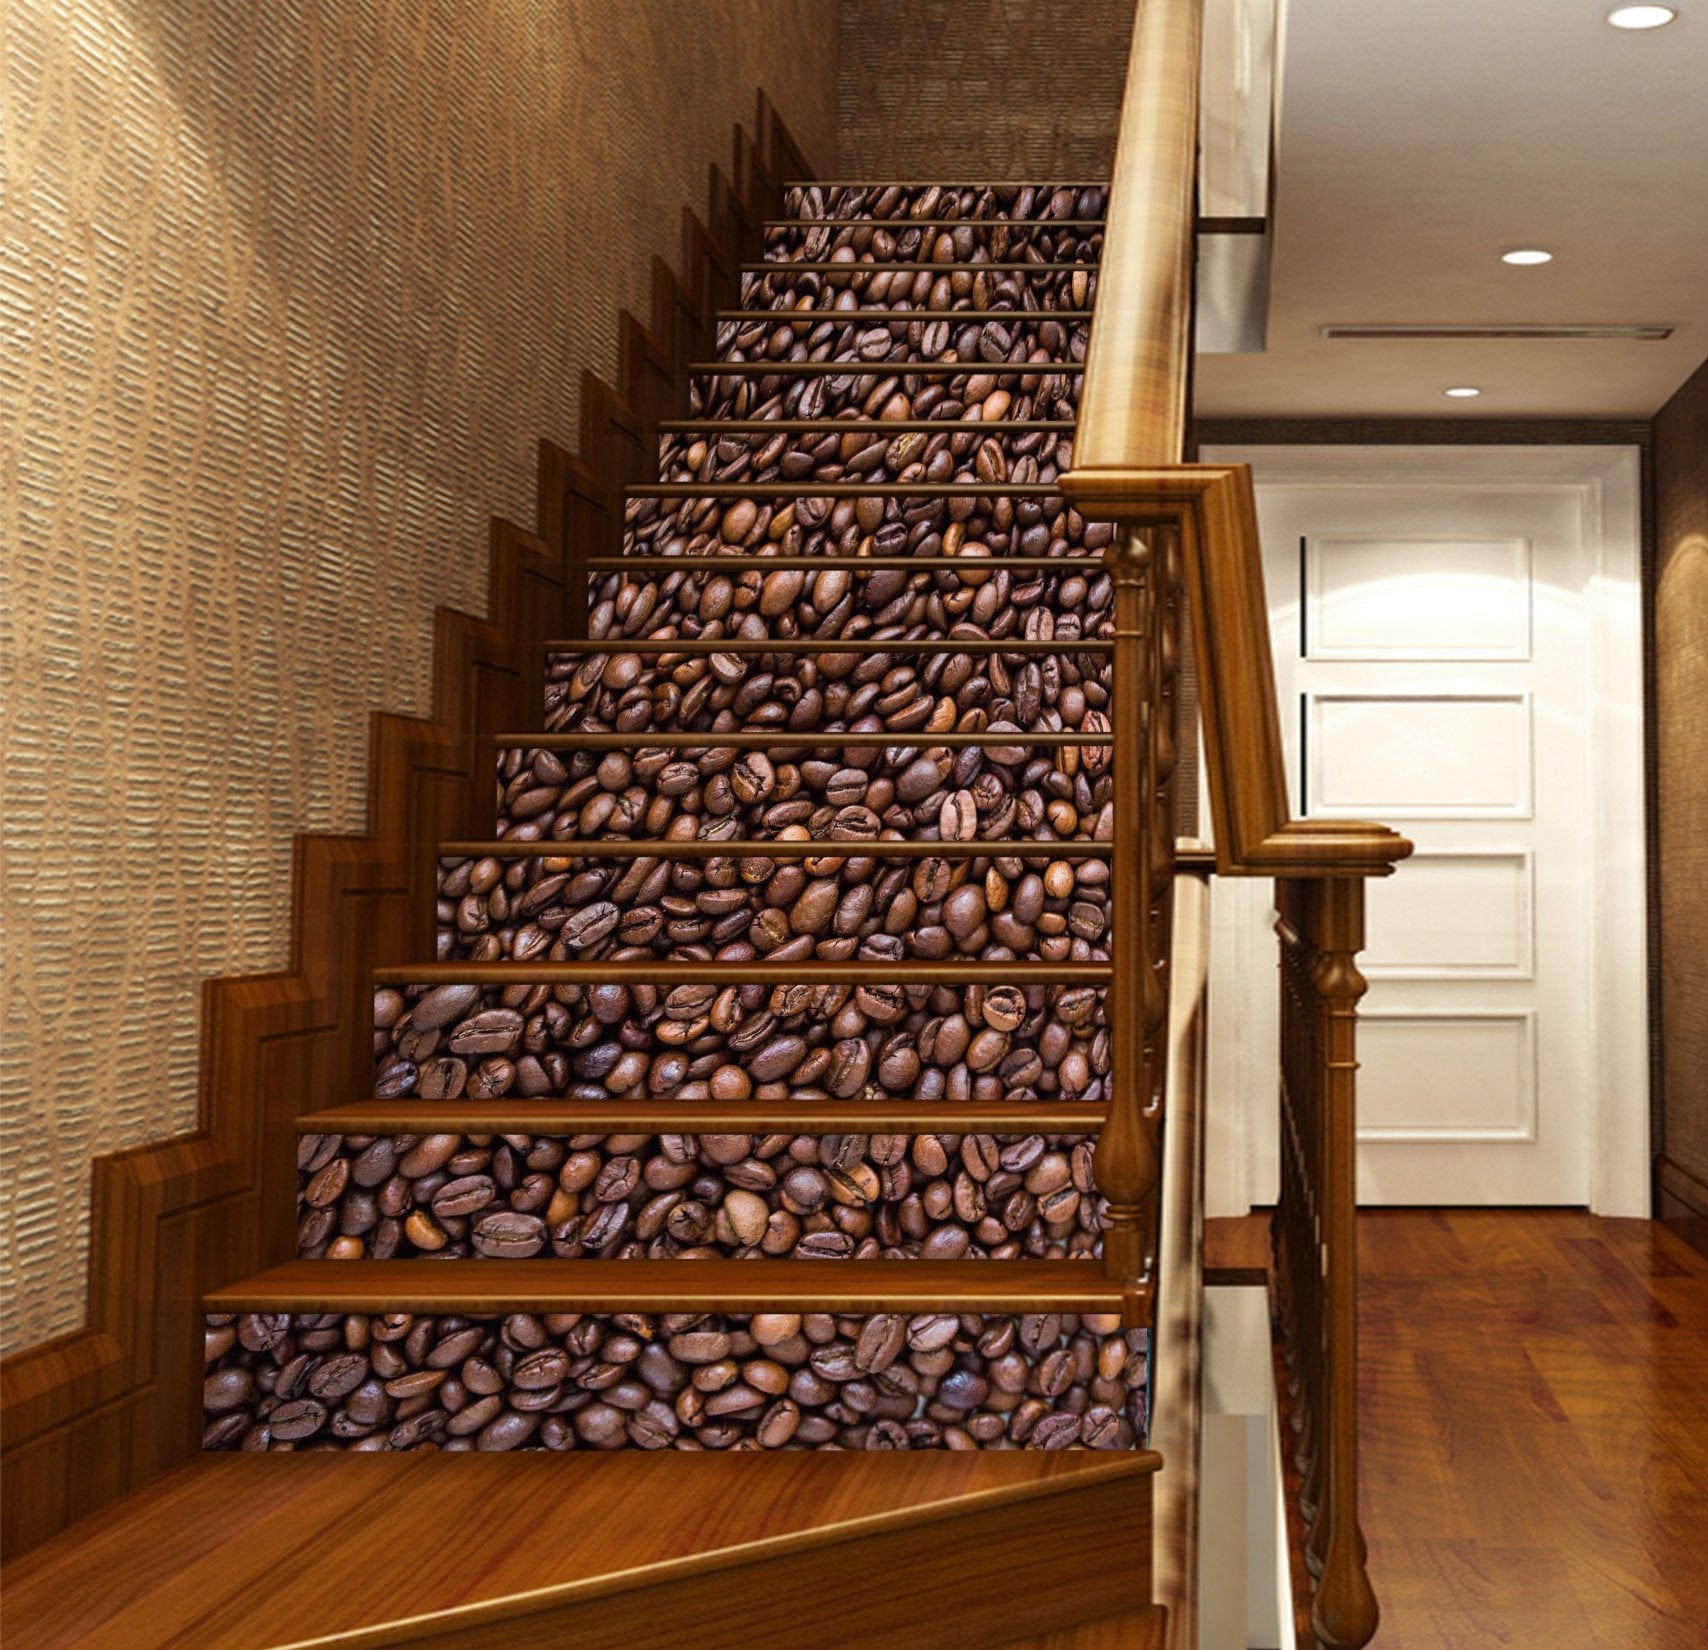 3D Coffee Beans Heap 1138 Stair Risers Wallpaper AJ Wallpaper 